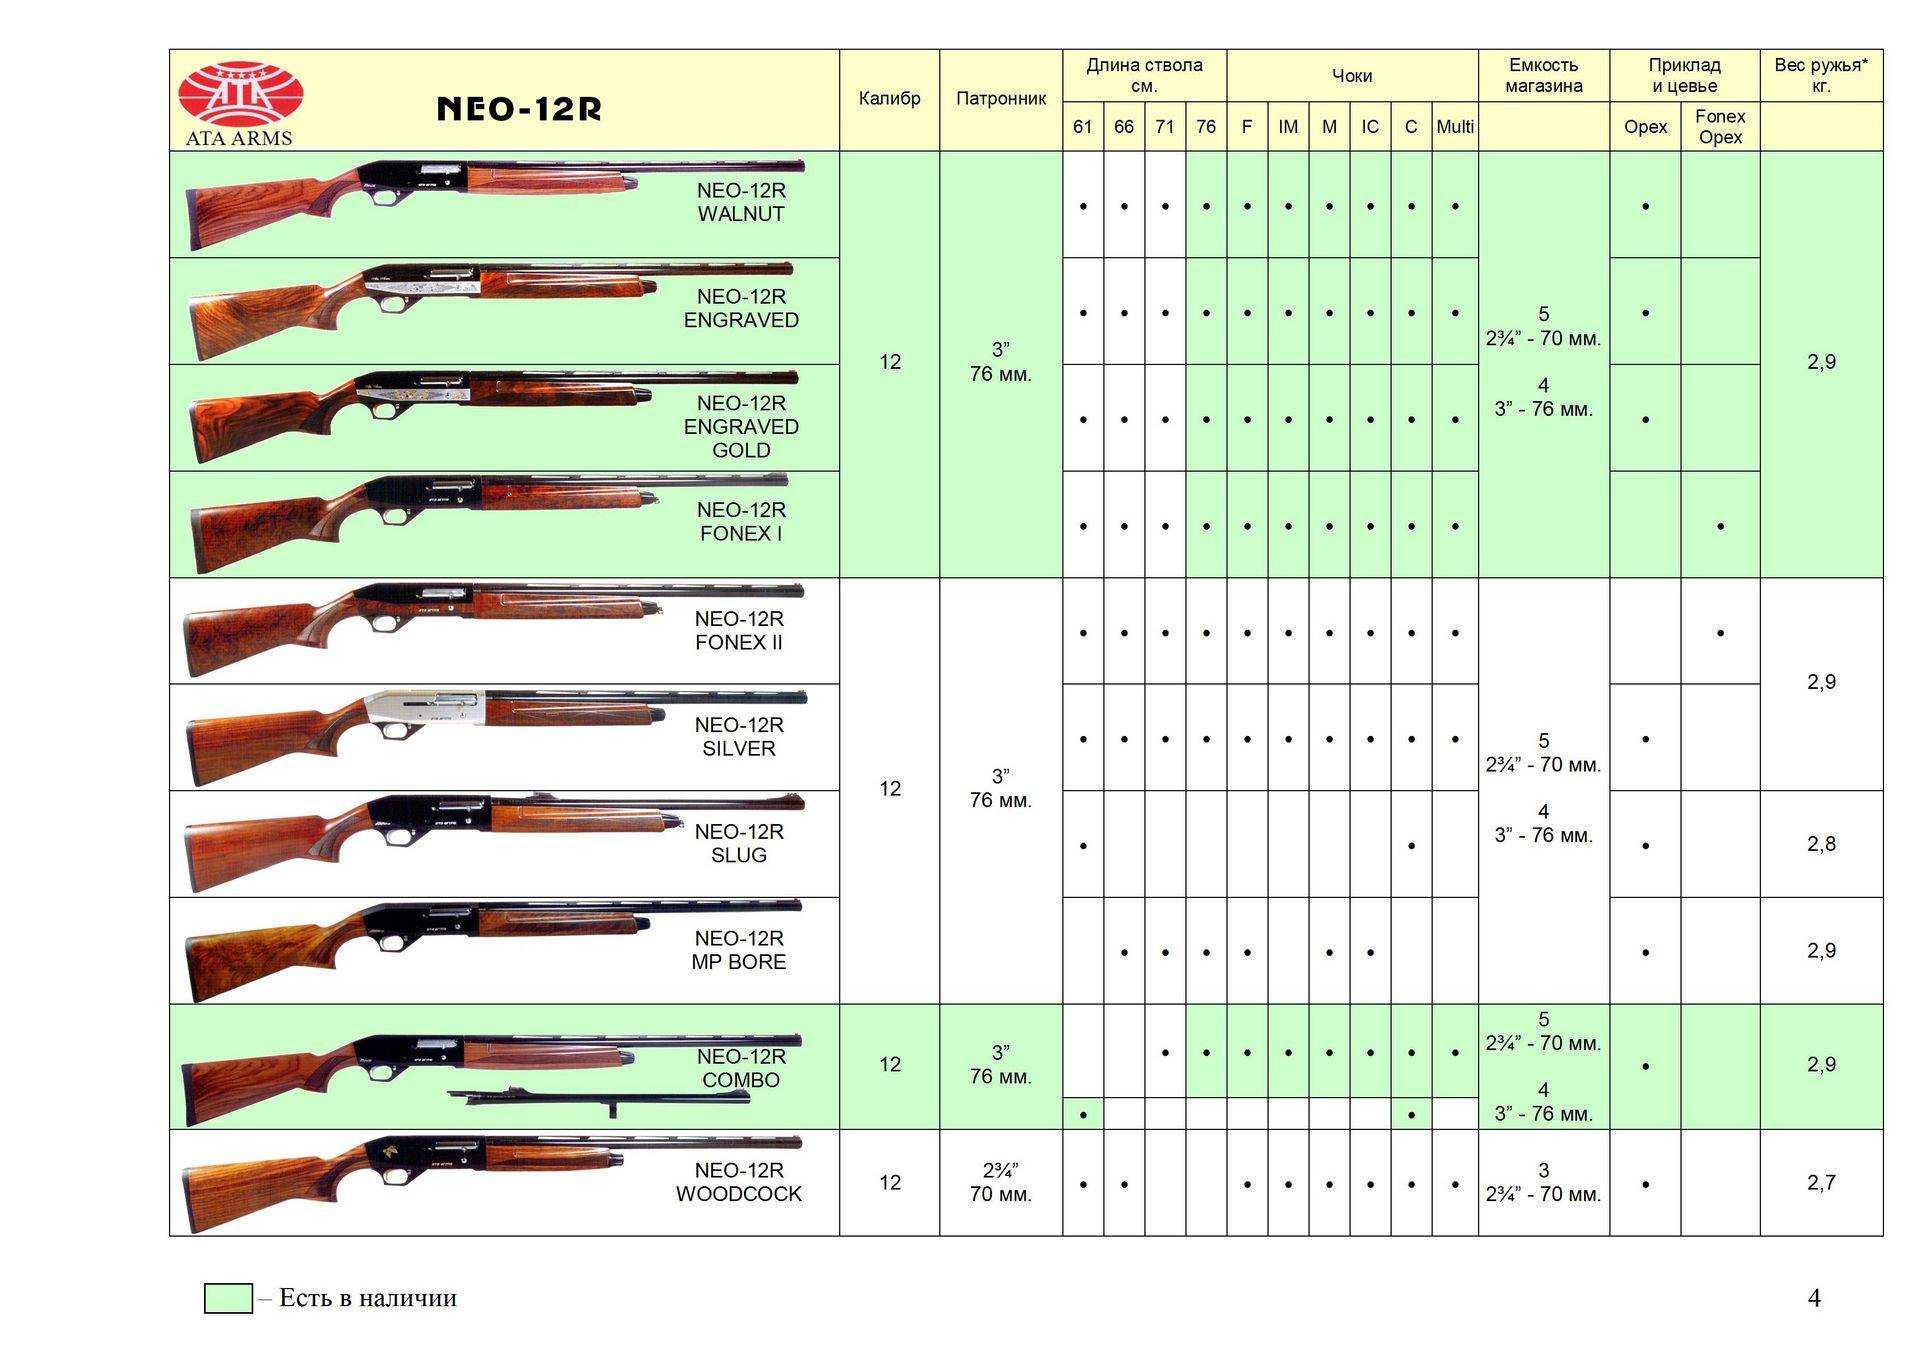 Советы по чистке гладкоствольных и помповых ружей во время охоты и после